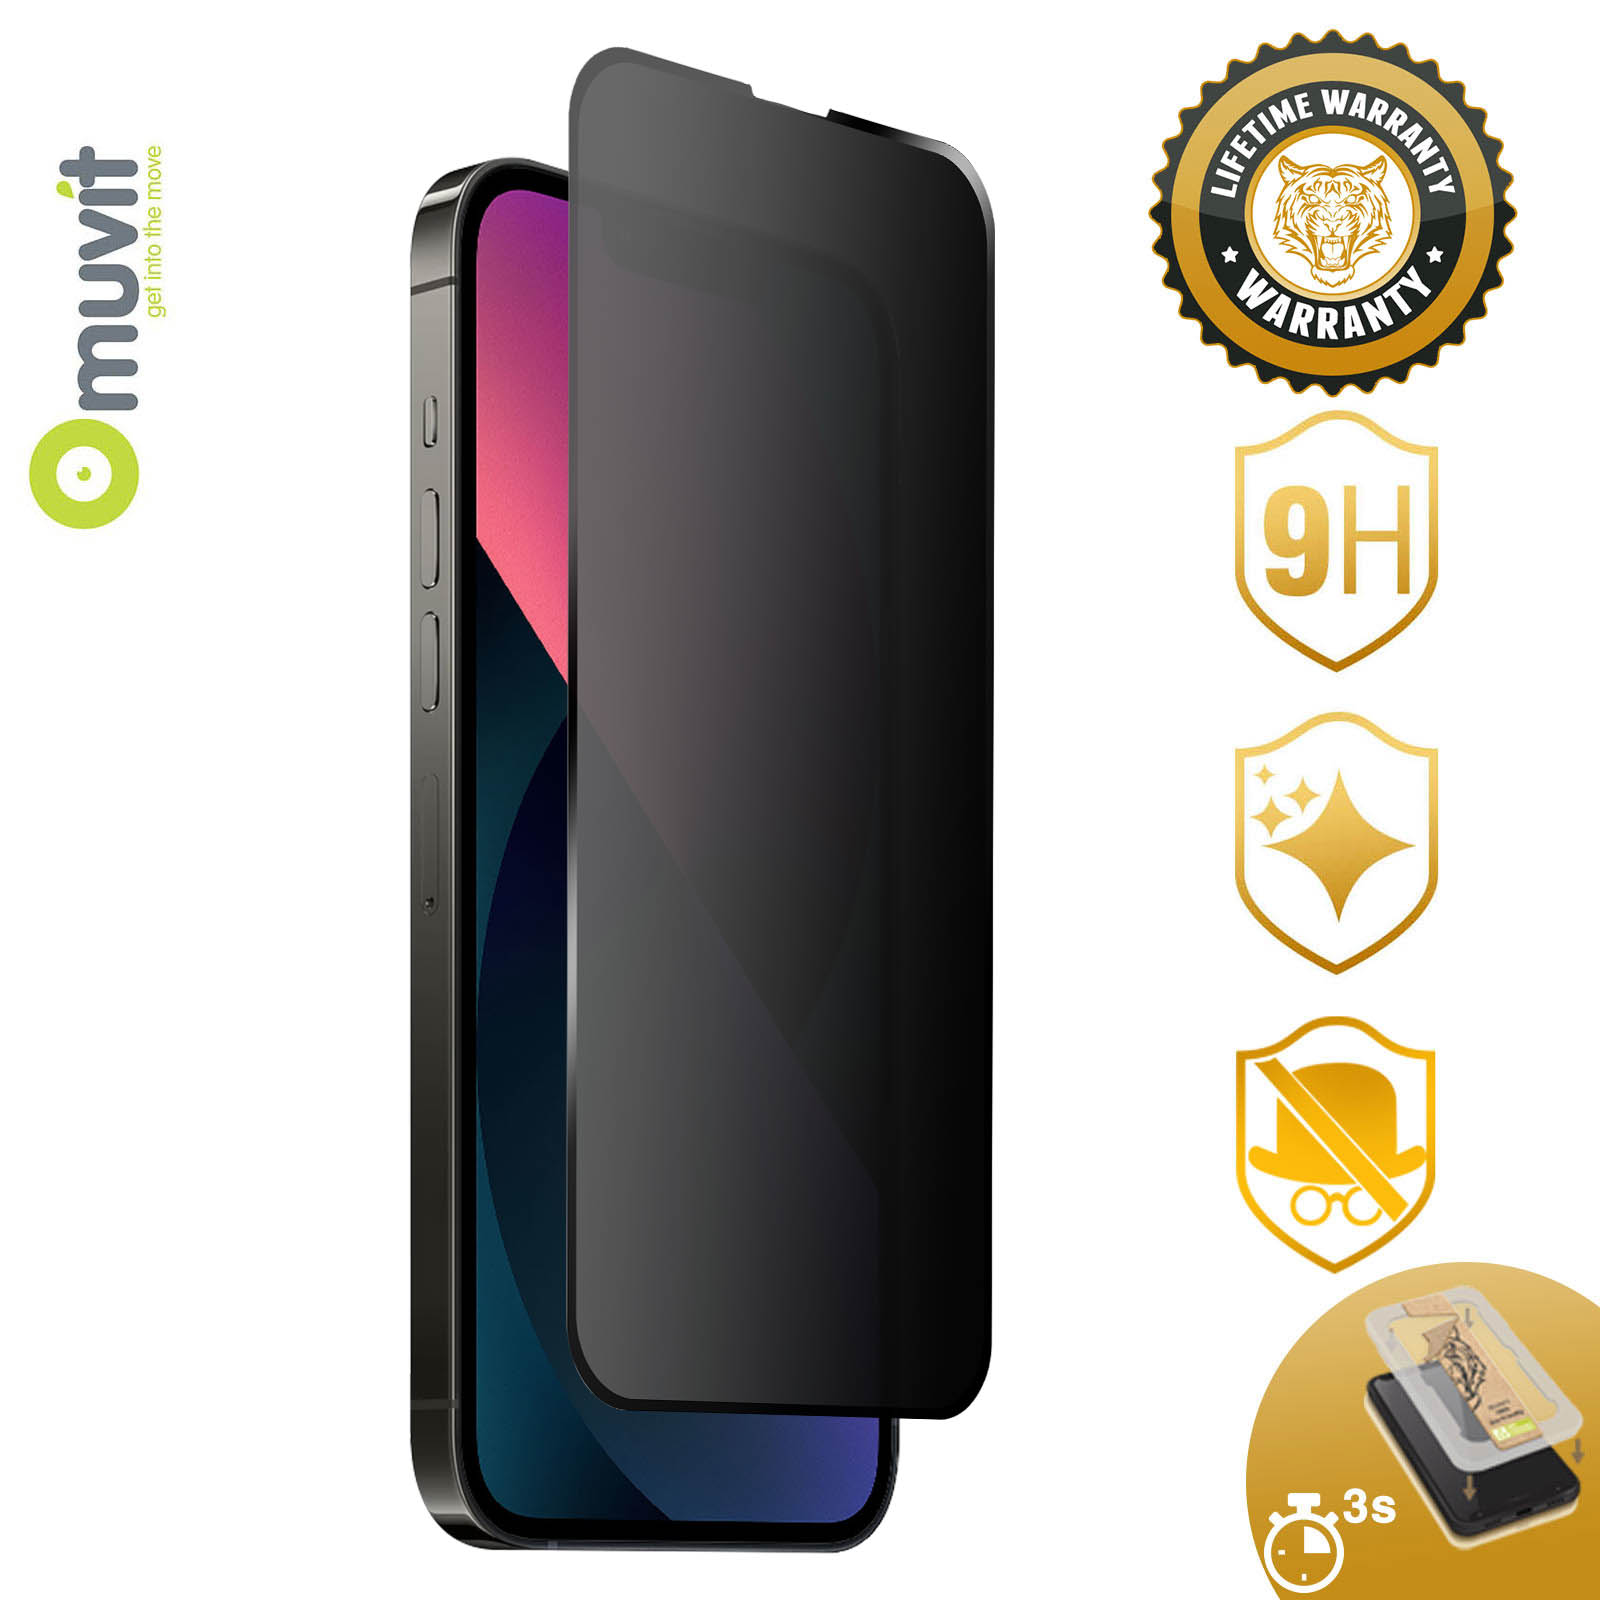 Verre trempé Muvit Tiger Glass+ iPhone 13 Pro Max, Protection Écran  Anti-Espion + Applicateur - Français